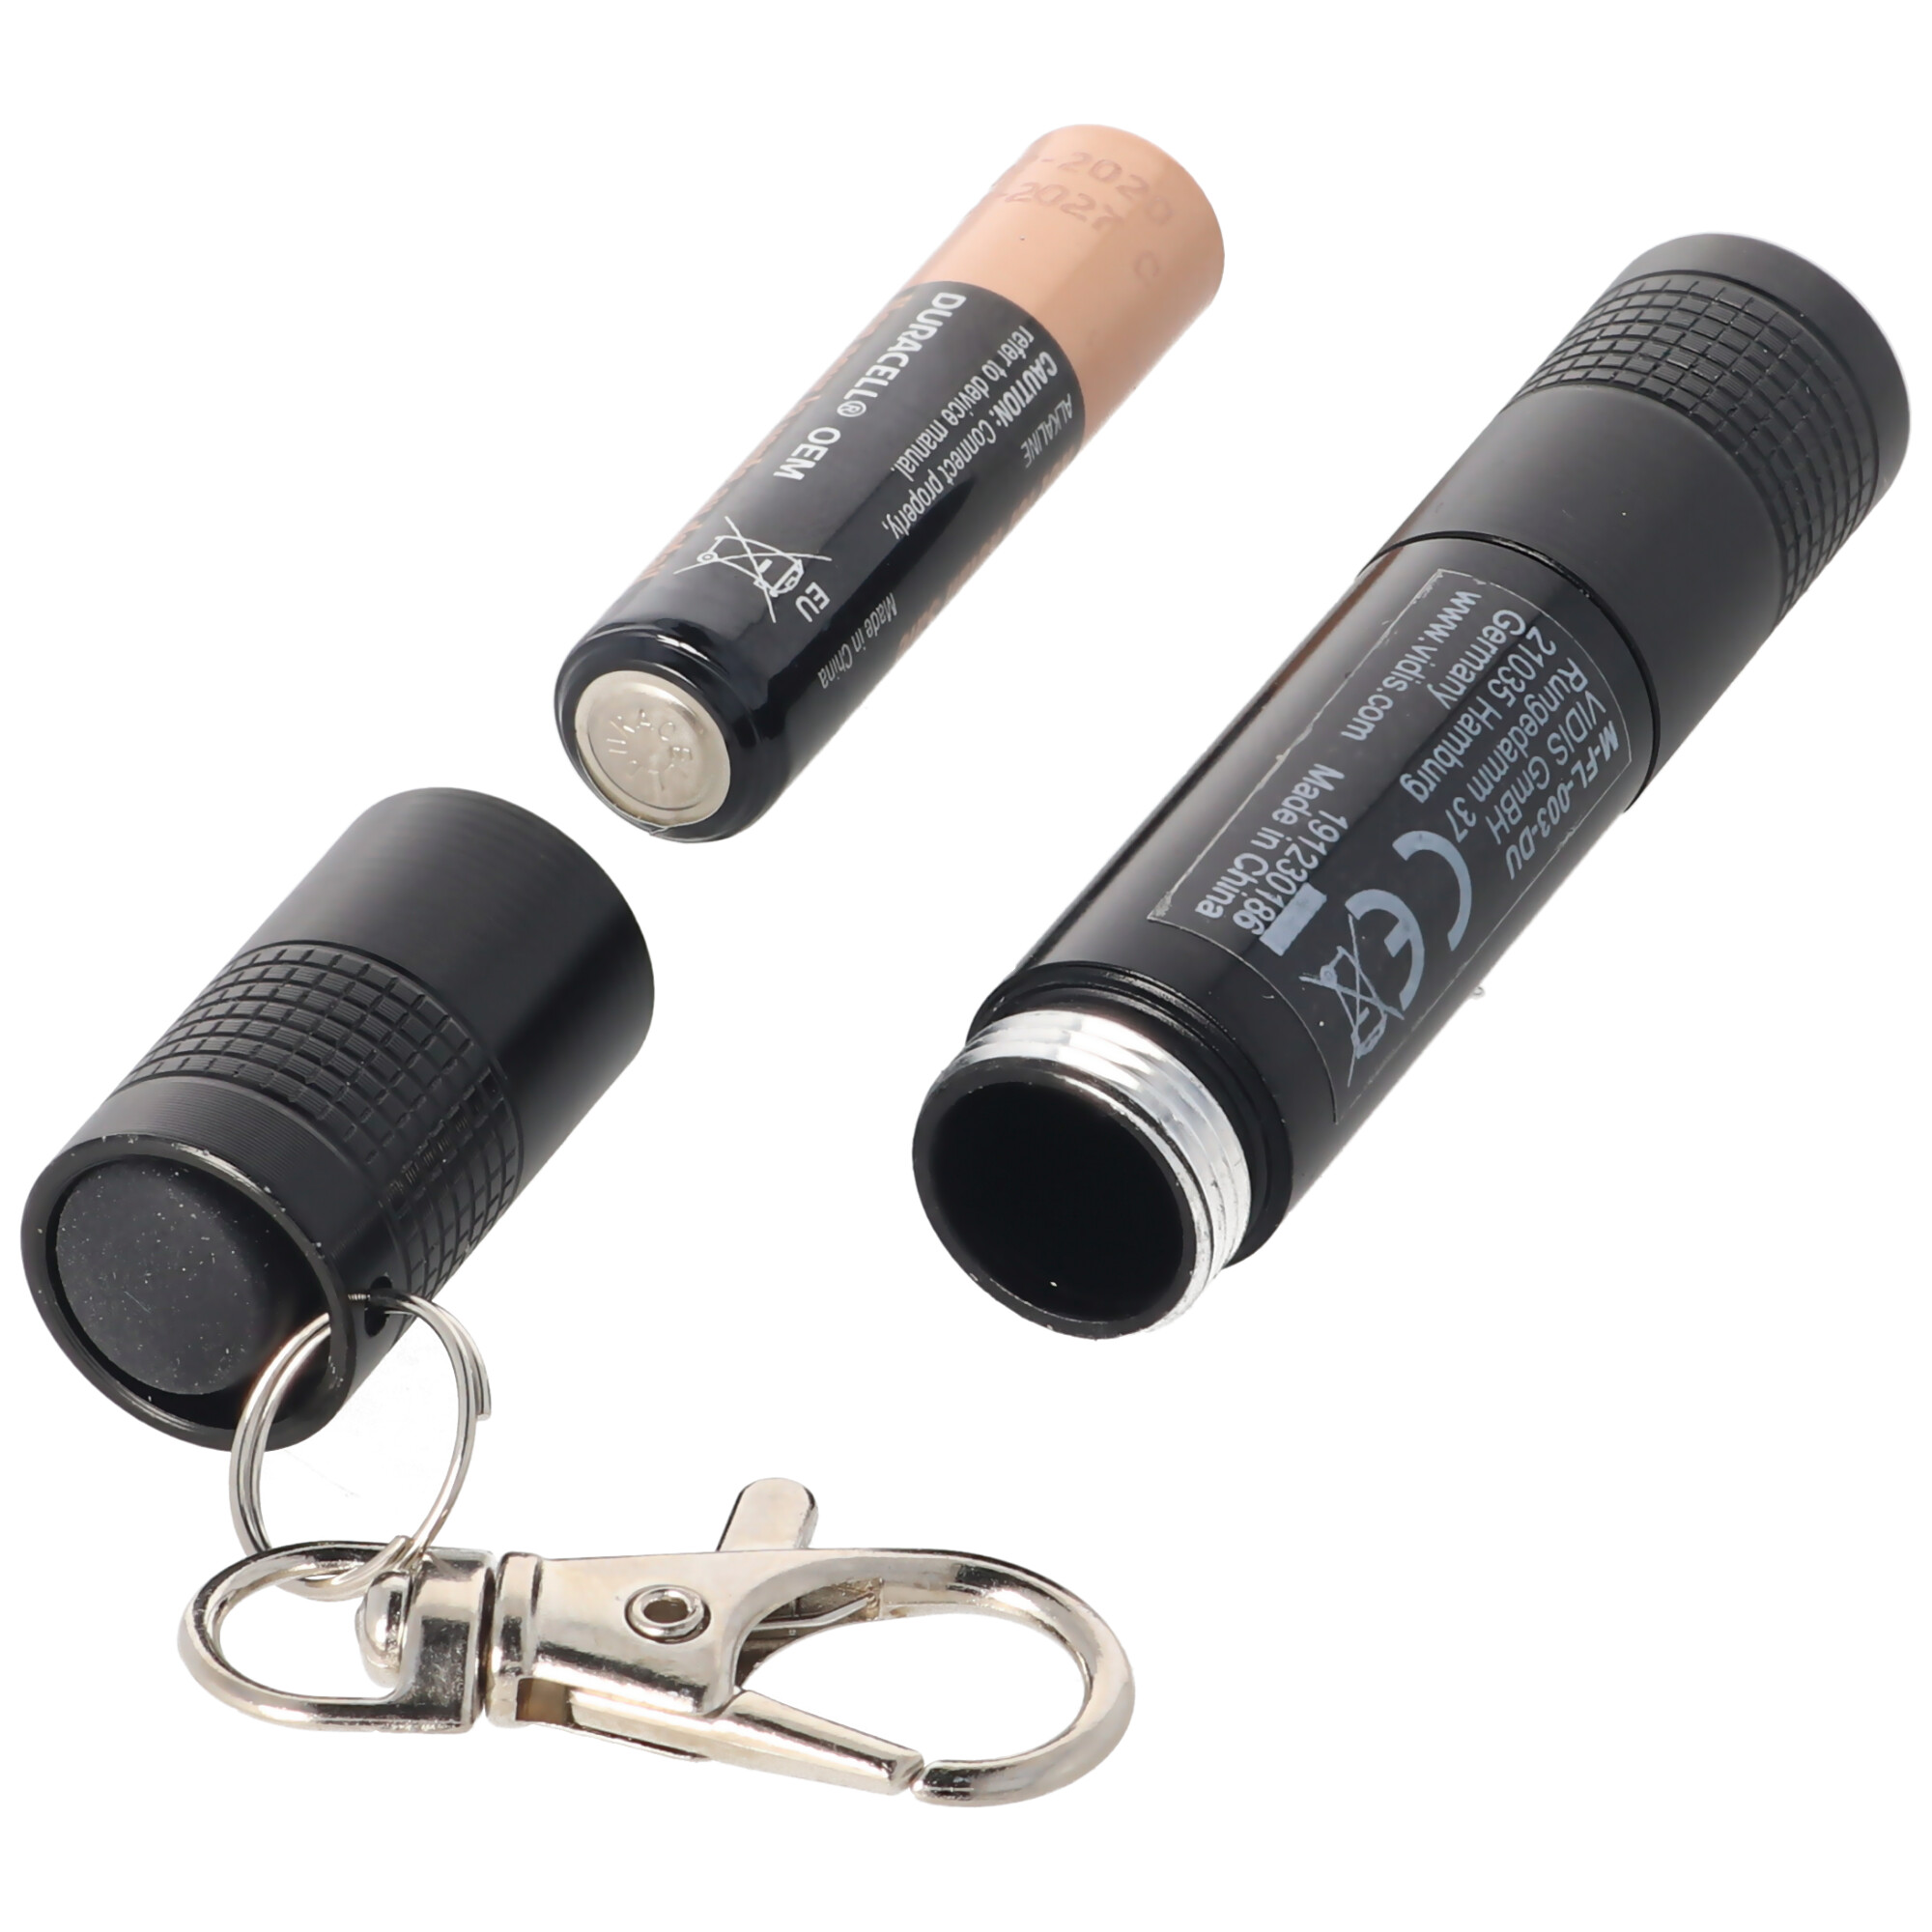 20 Lumen Miniatur LED-Taschenlampe im Stiftformat inklusive Schlüsselring, Karabiner und Batterie